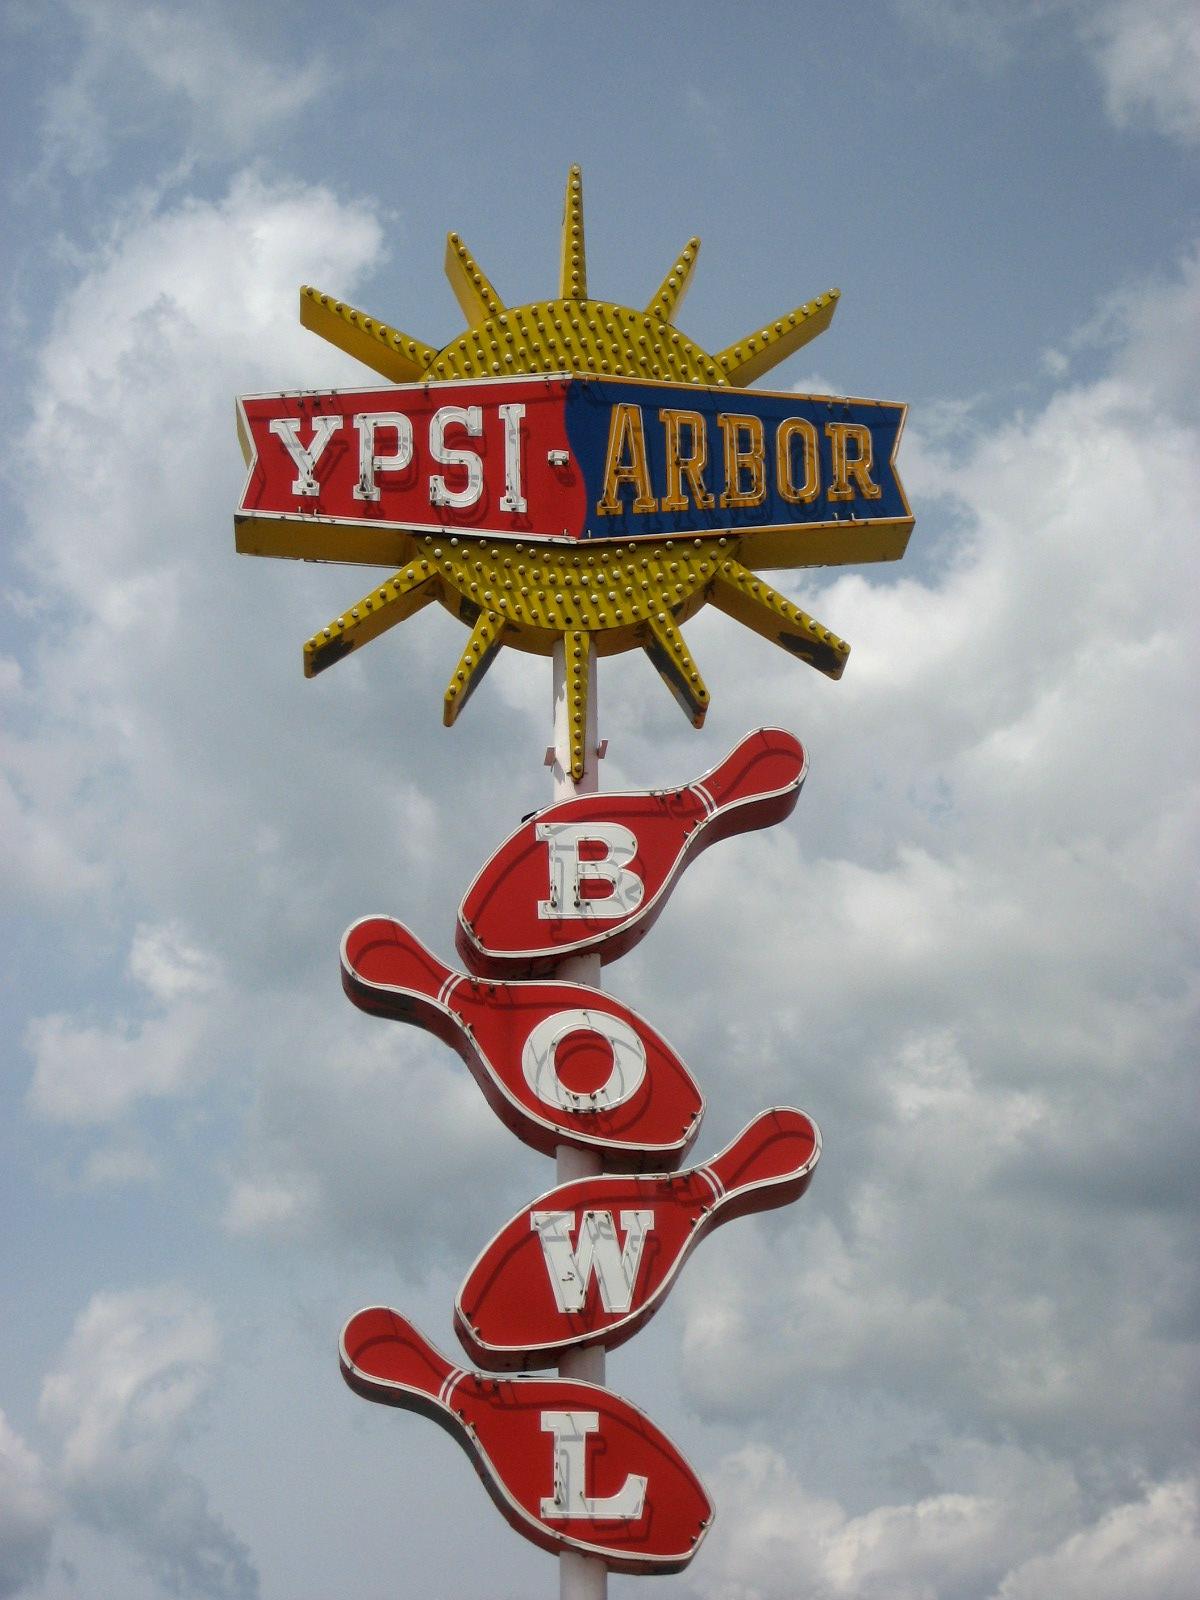 Ypsi-Arbor Bowl - Ypsilanti, Michigan U.S.A. - May 17, 2008